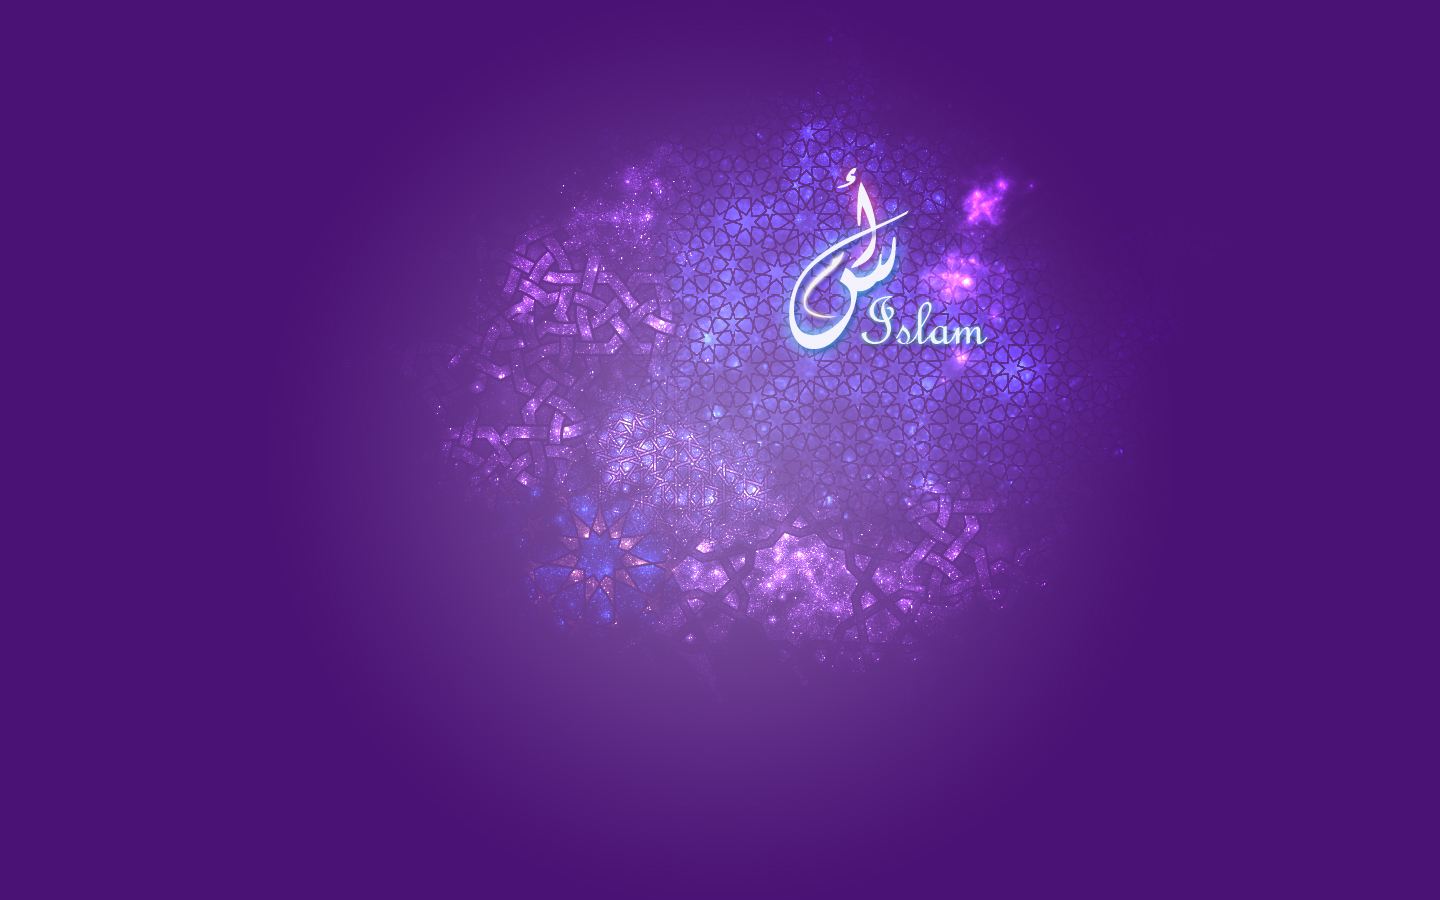 イスラム愛の壁紙,バイオレット,紫の,青い,テキスト,光